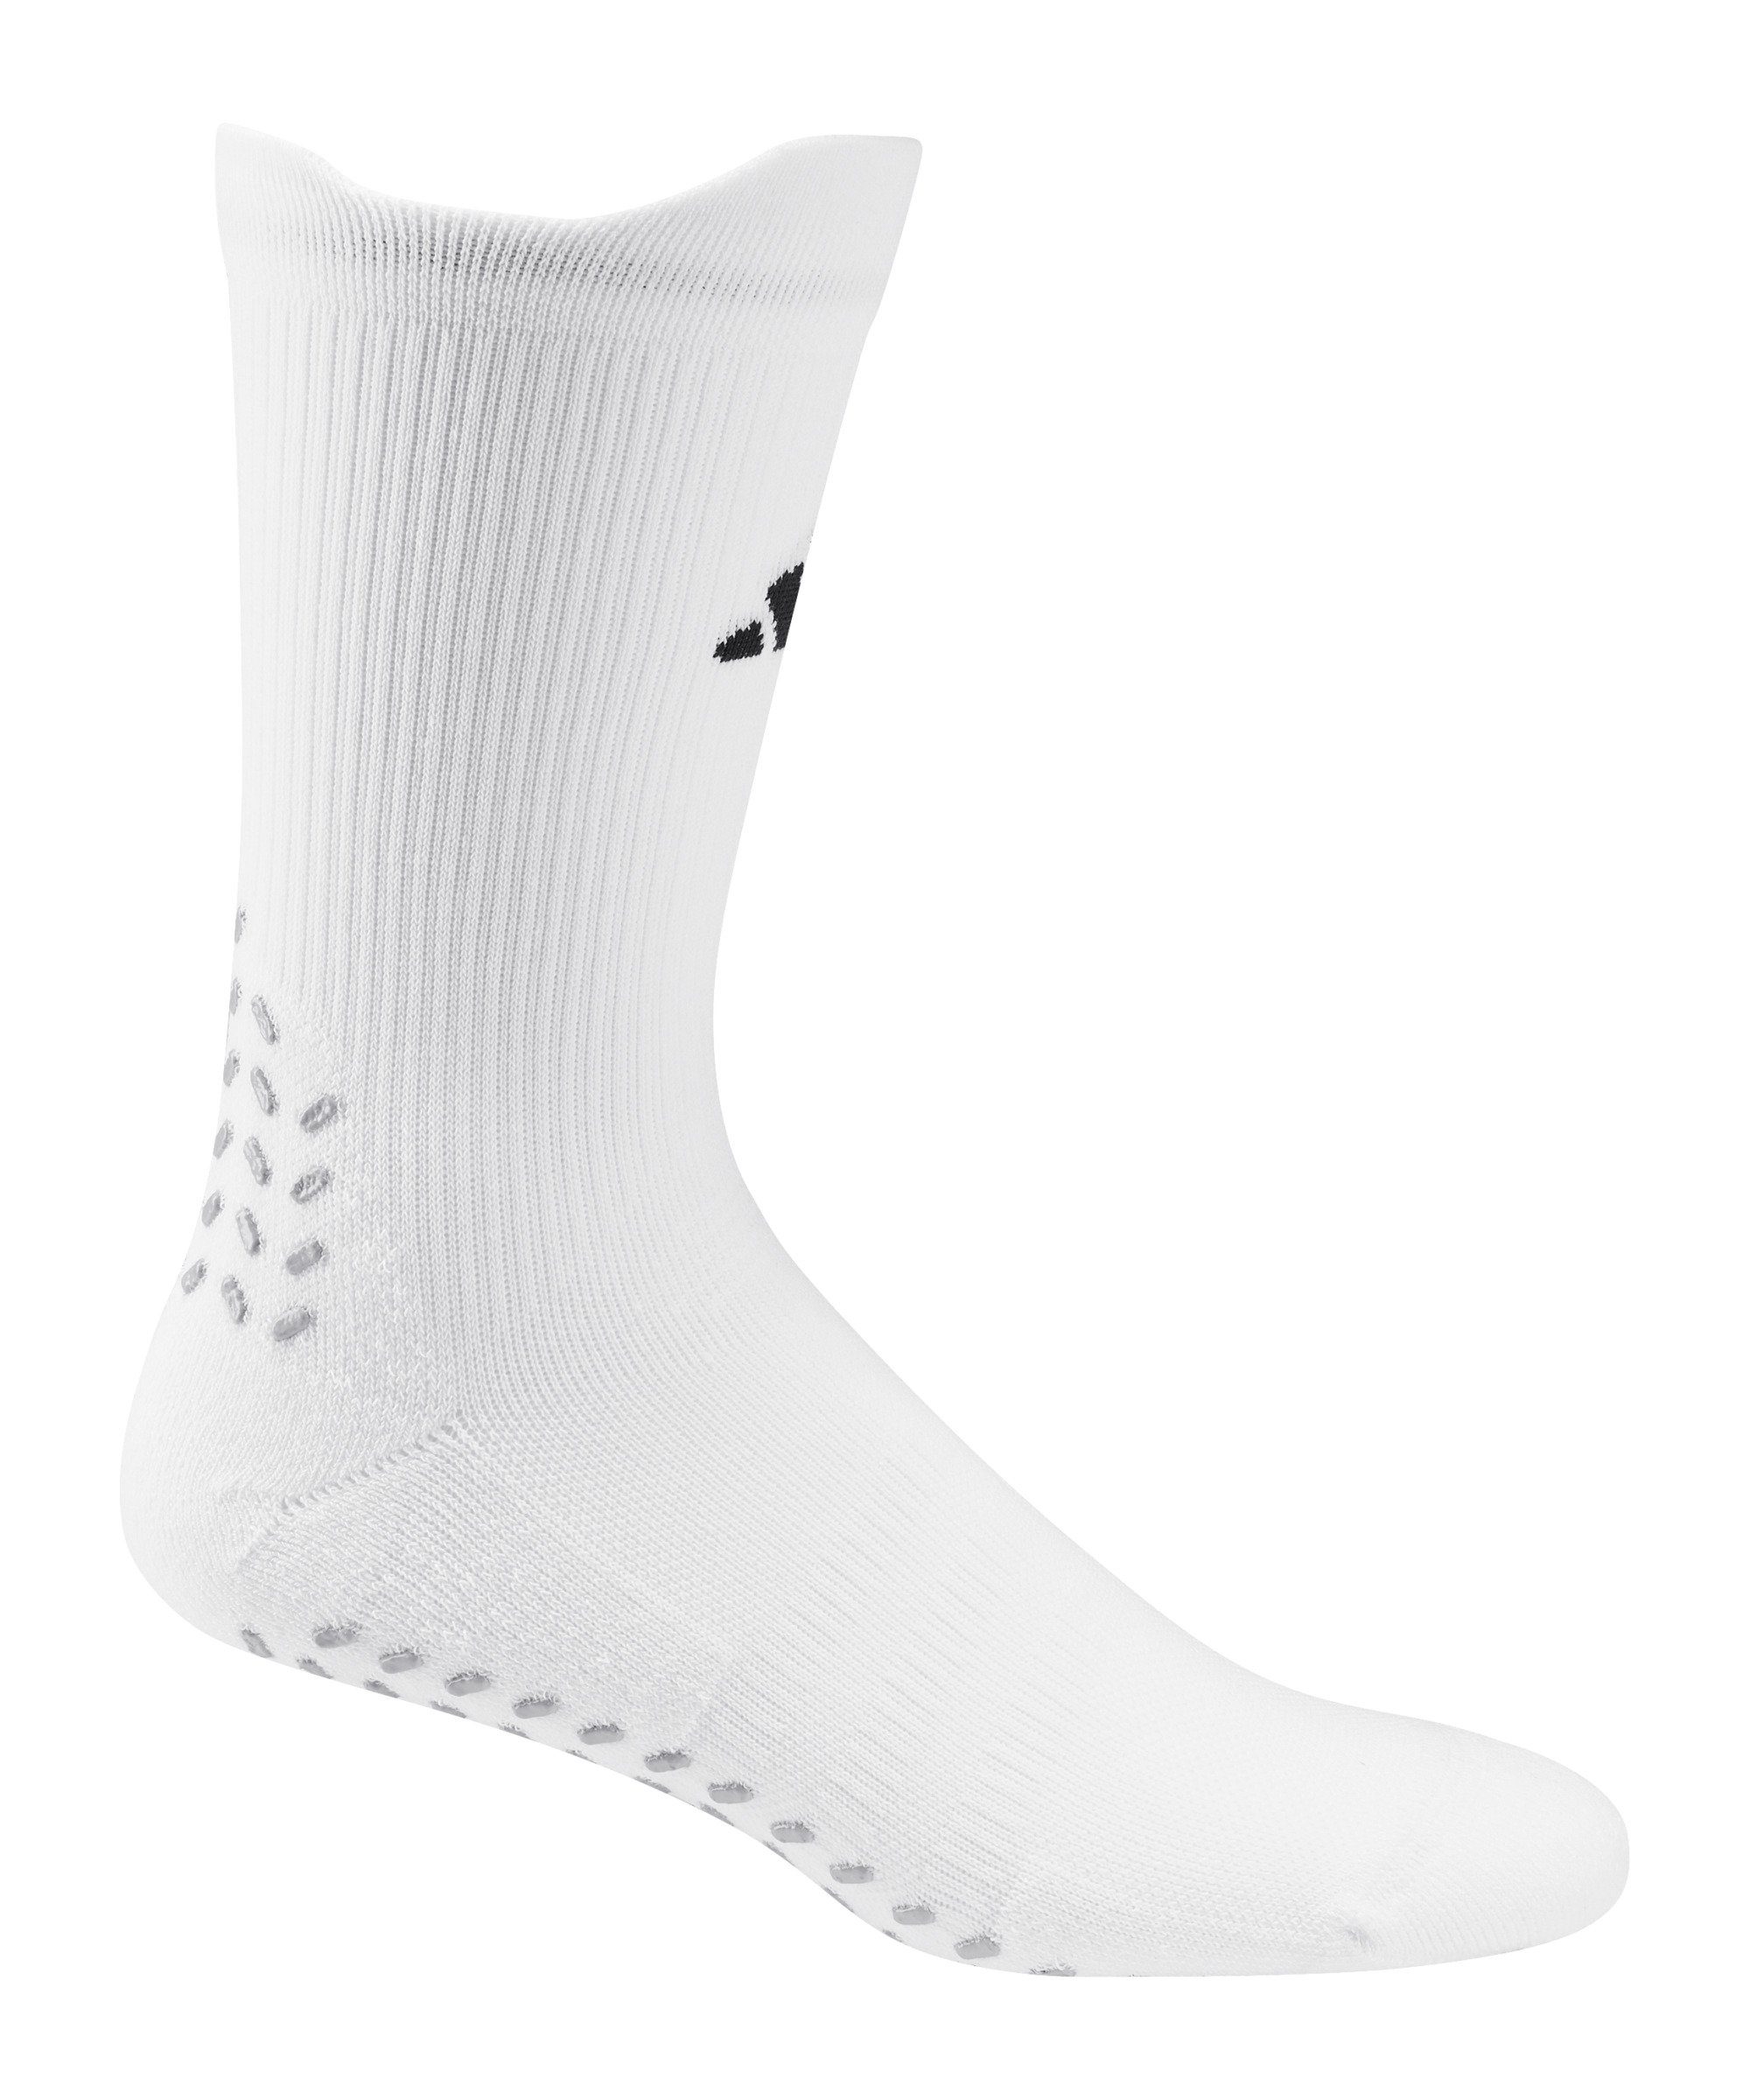 adidas Performance Sportsocken Grip Print Socken default weissschwarz